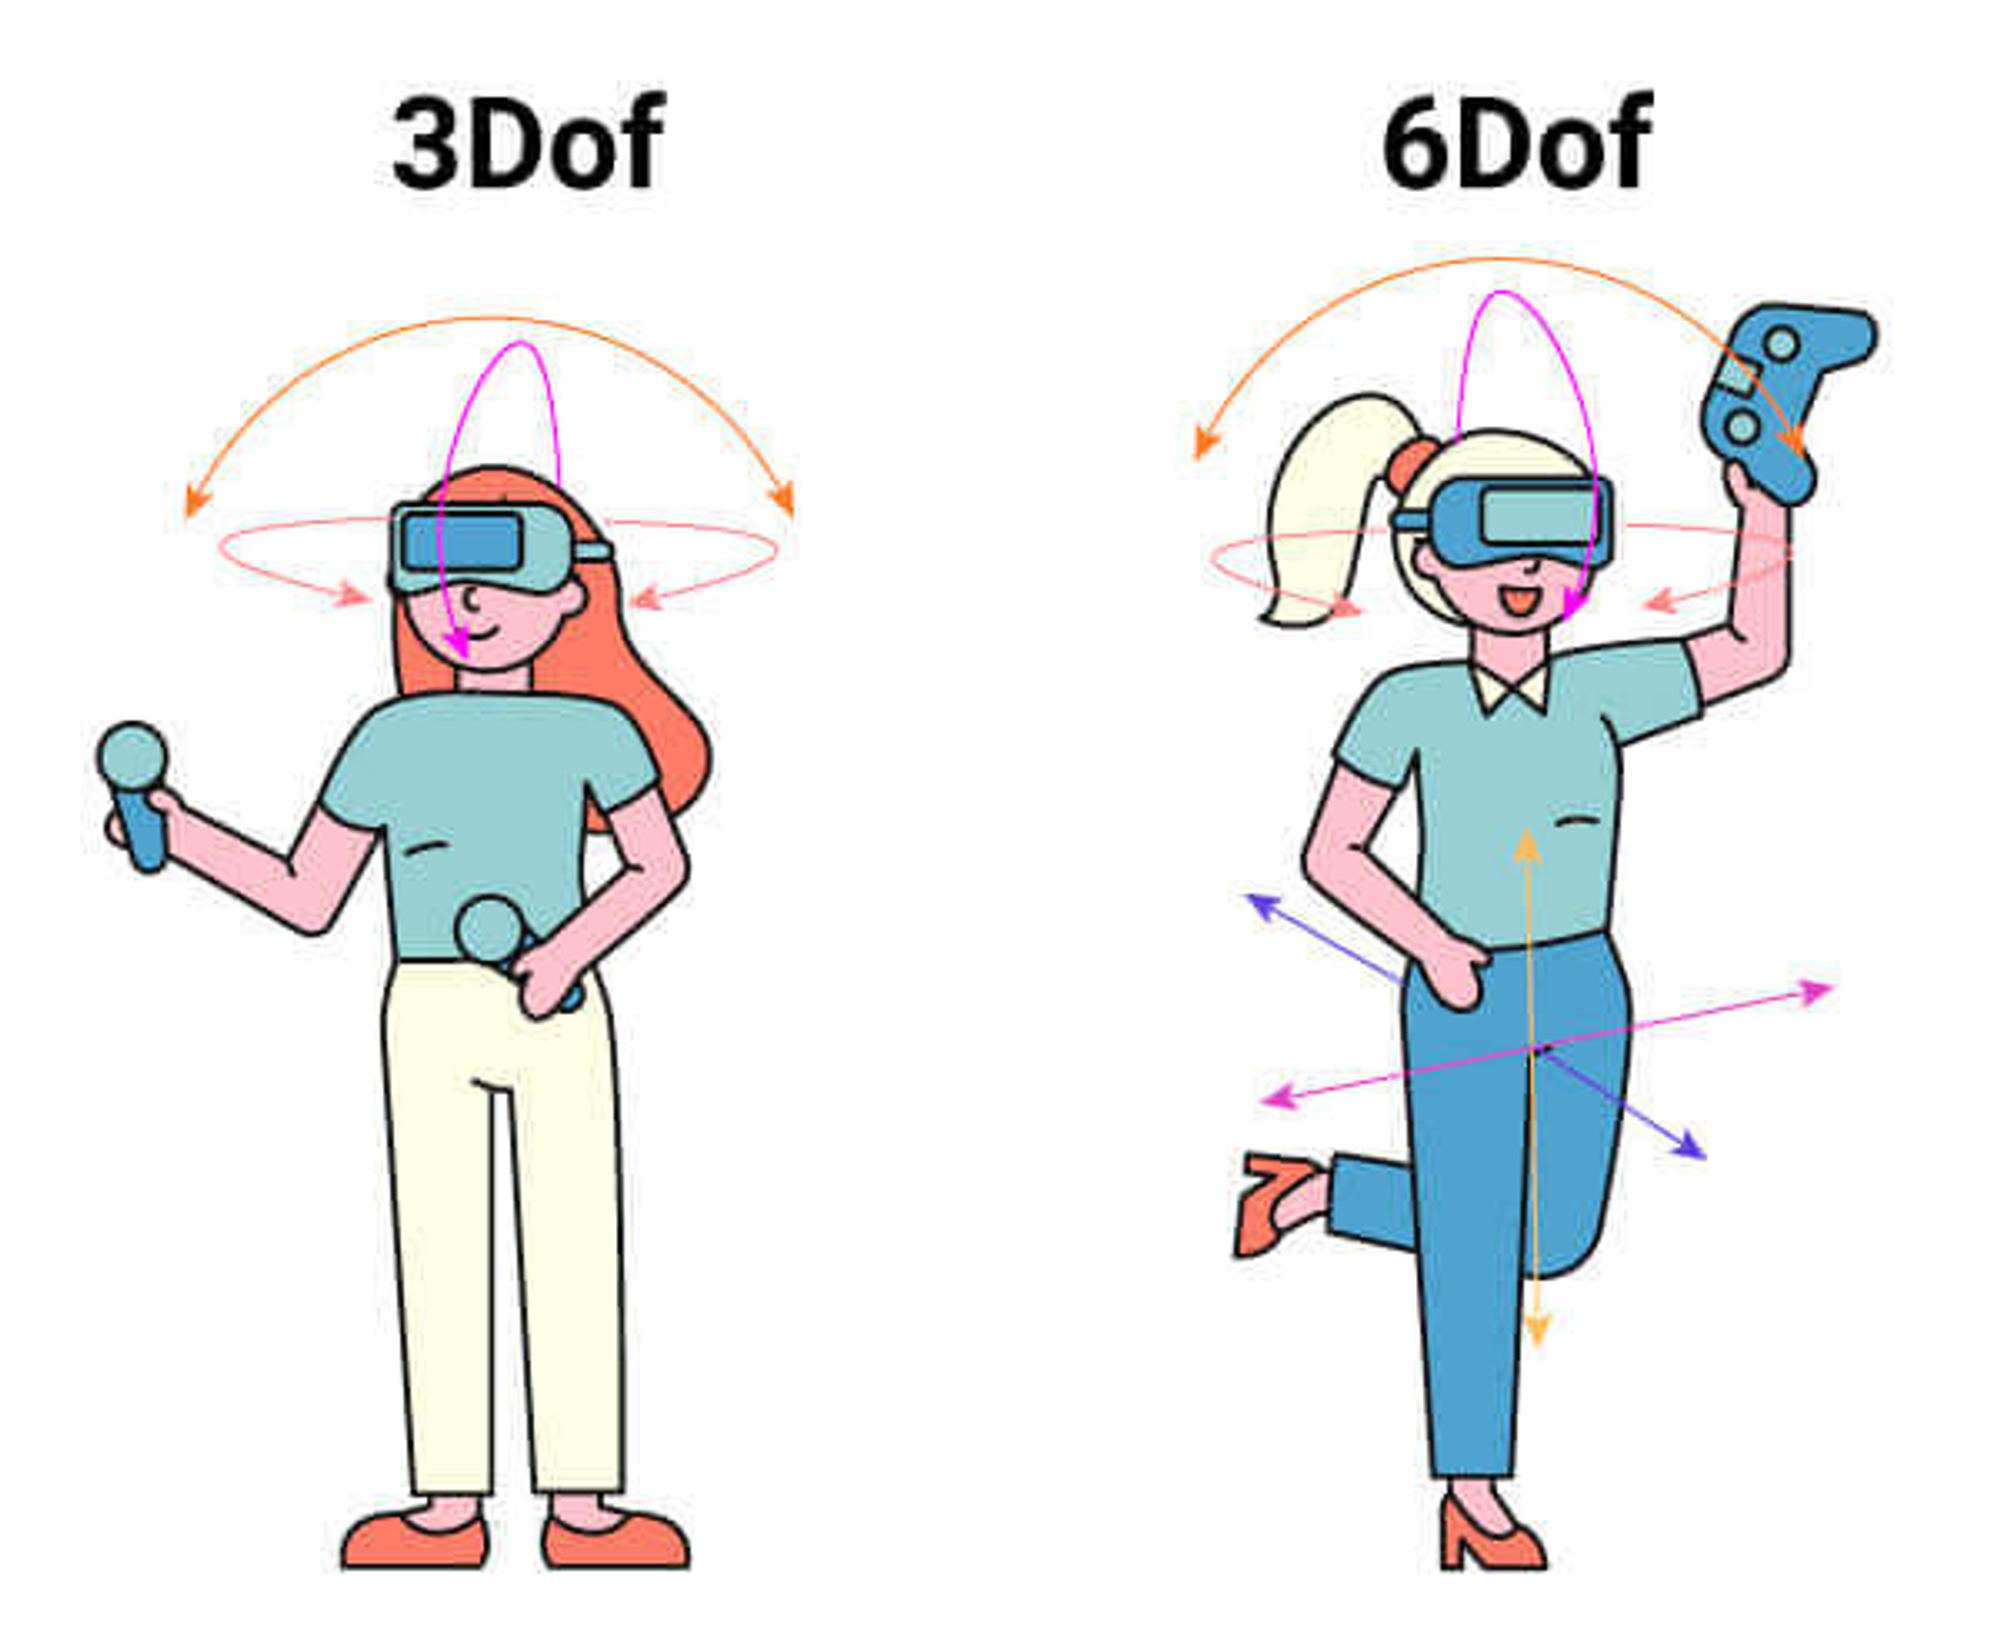 3 DoF vs 6 DoF